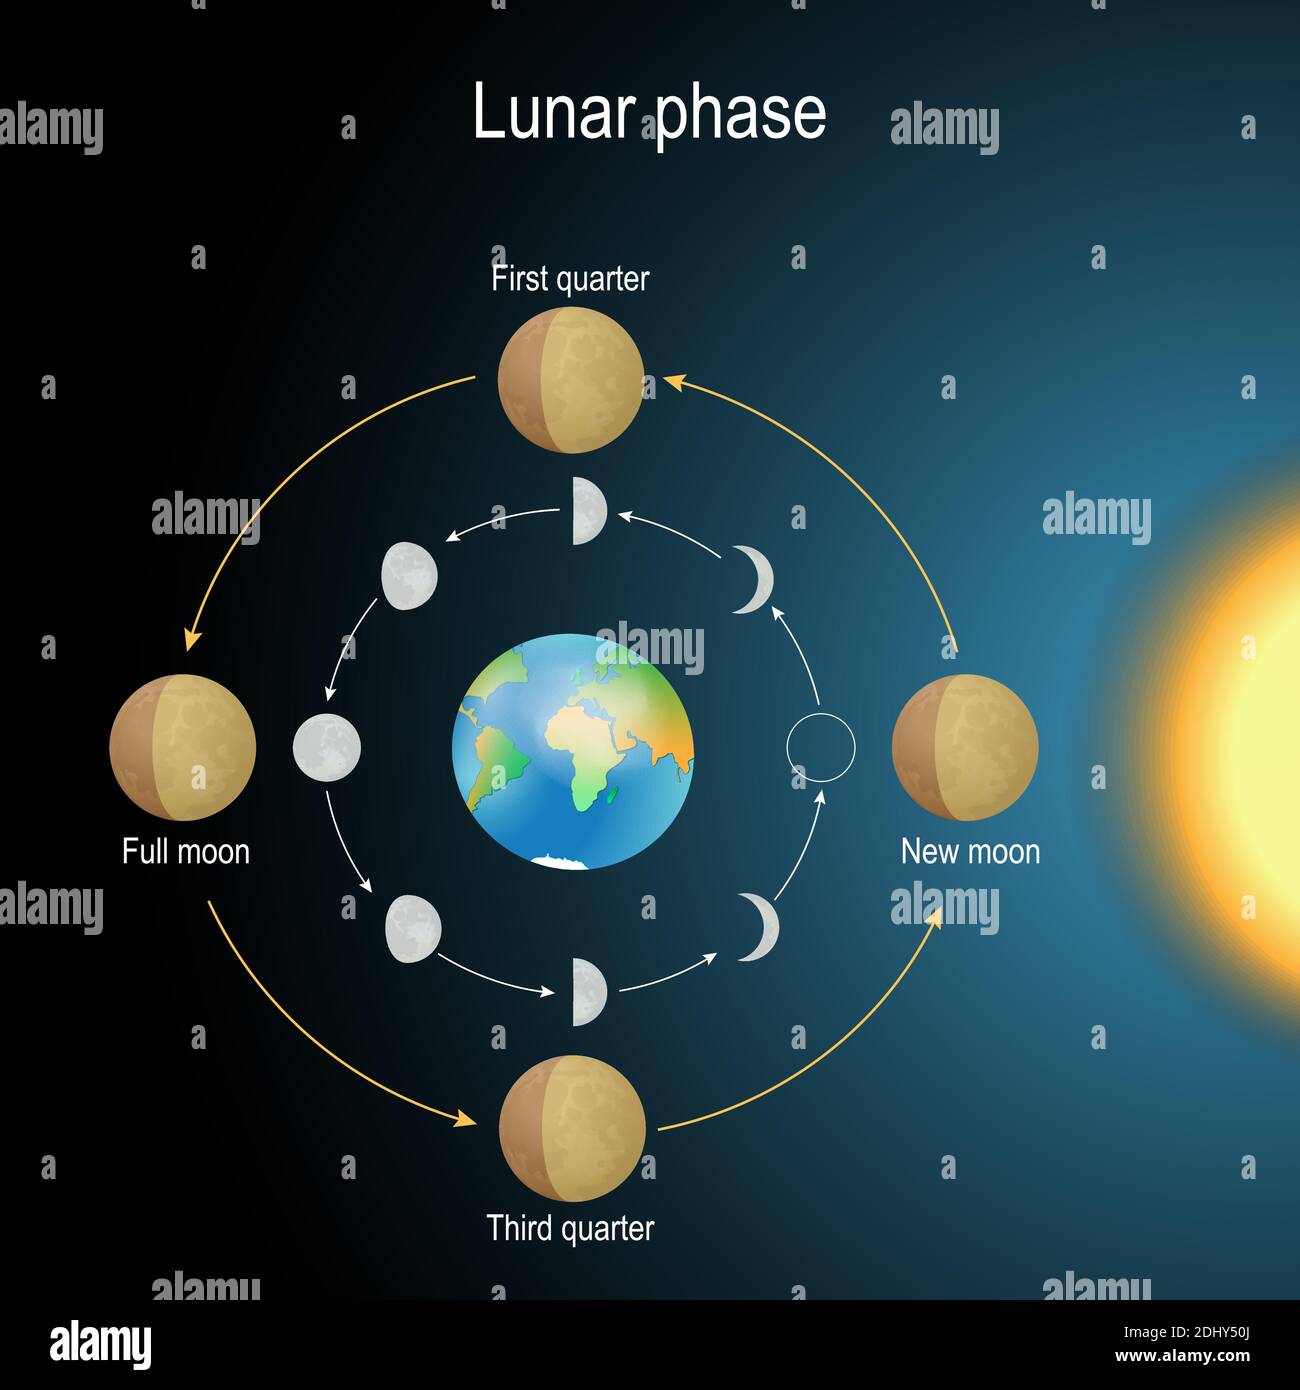 Mondphase. Phasen des Mondes hängt von der Position des Mondes in der Umlaufbahn um die Erde und der Position der Erde in der Umlaufbahn um die Sonne ab. Vektor Stock Vektor